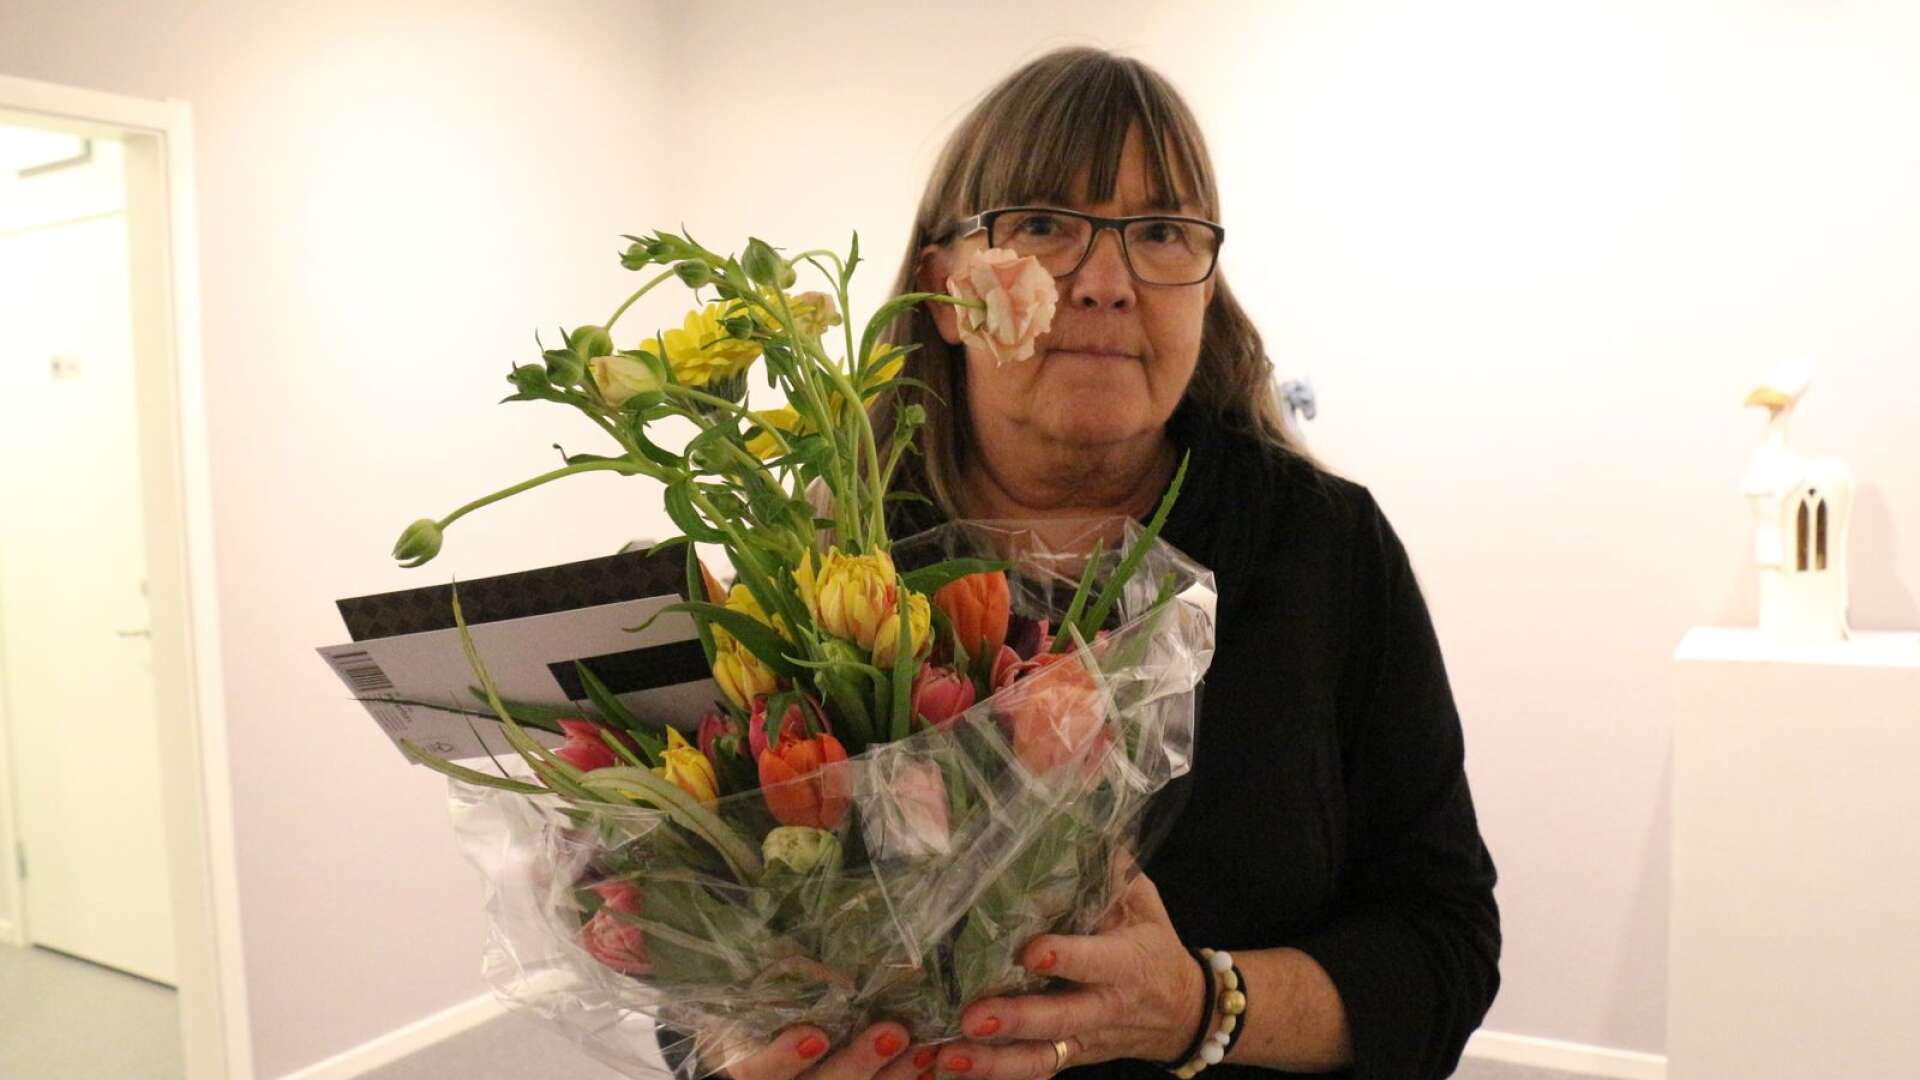 “Det här har vi jobbat för i många år”, säger Marie Pettersson, kulturutvecklare i Årjängs kommun om beslutet som togs av kommunfullmäktige i februari.